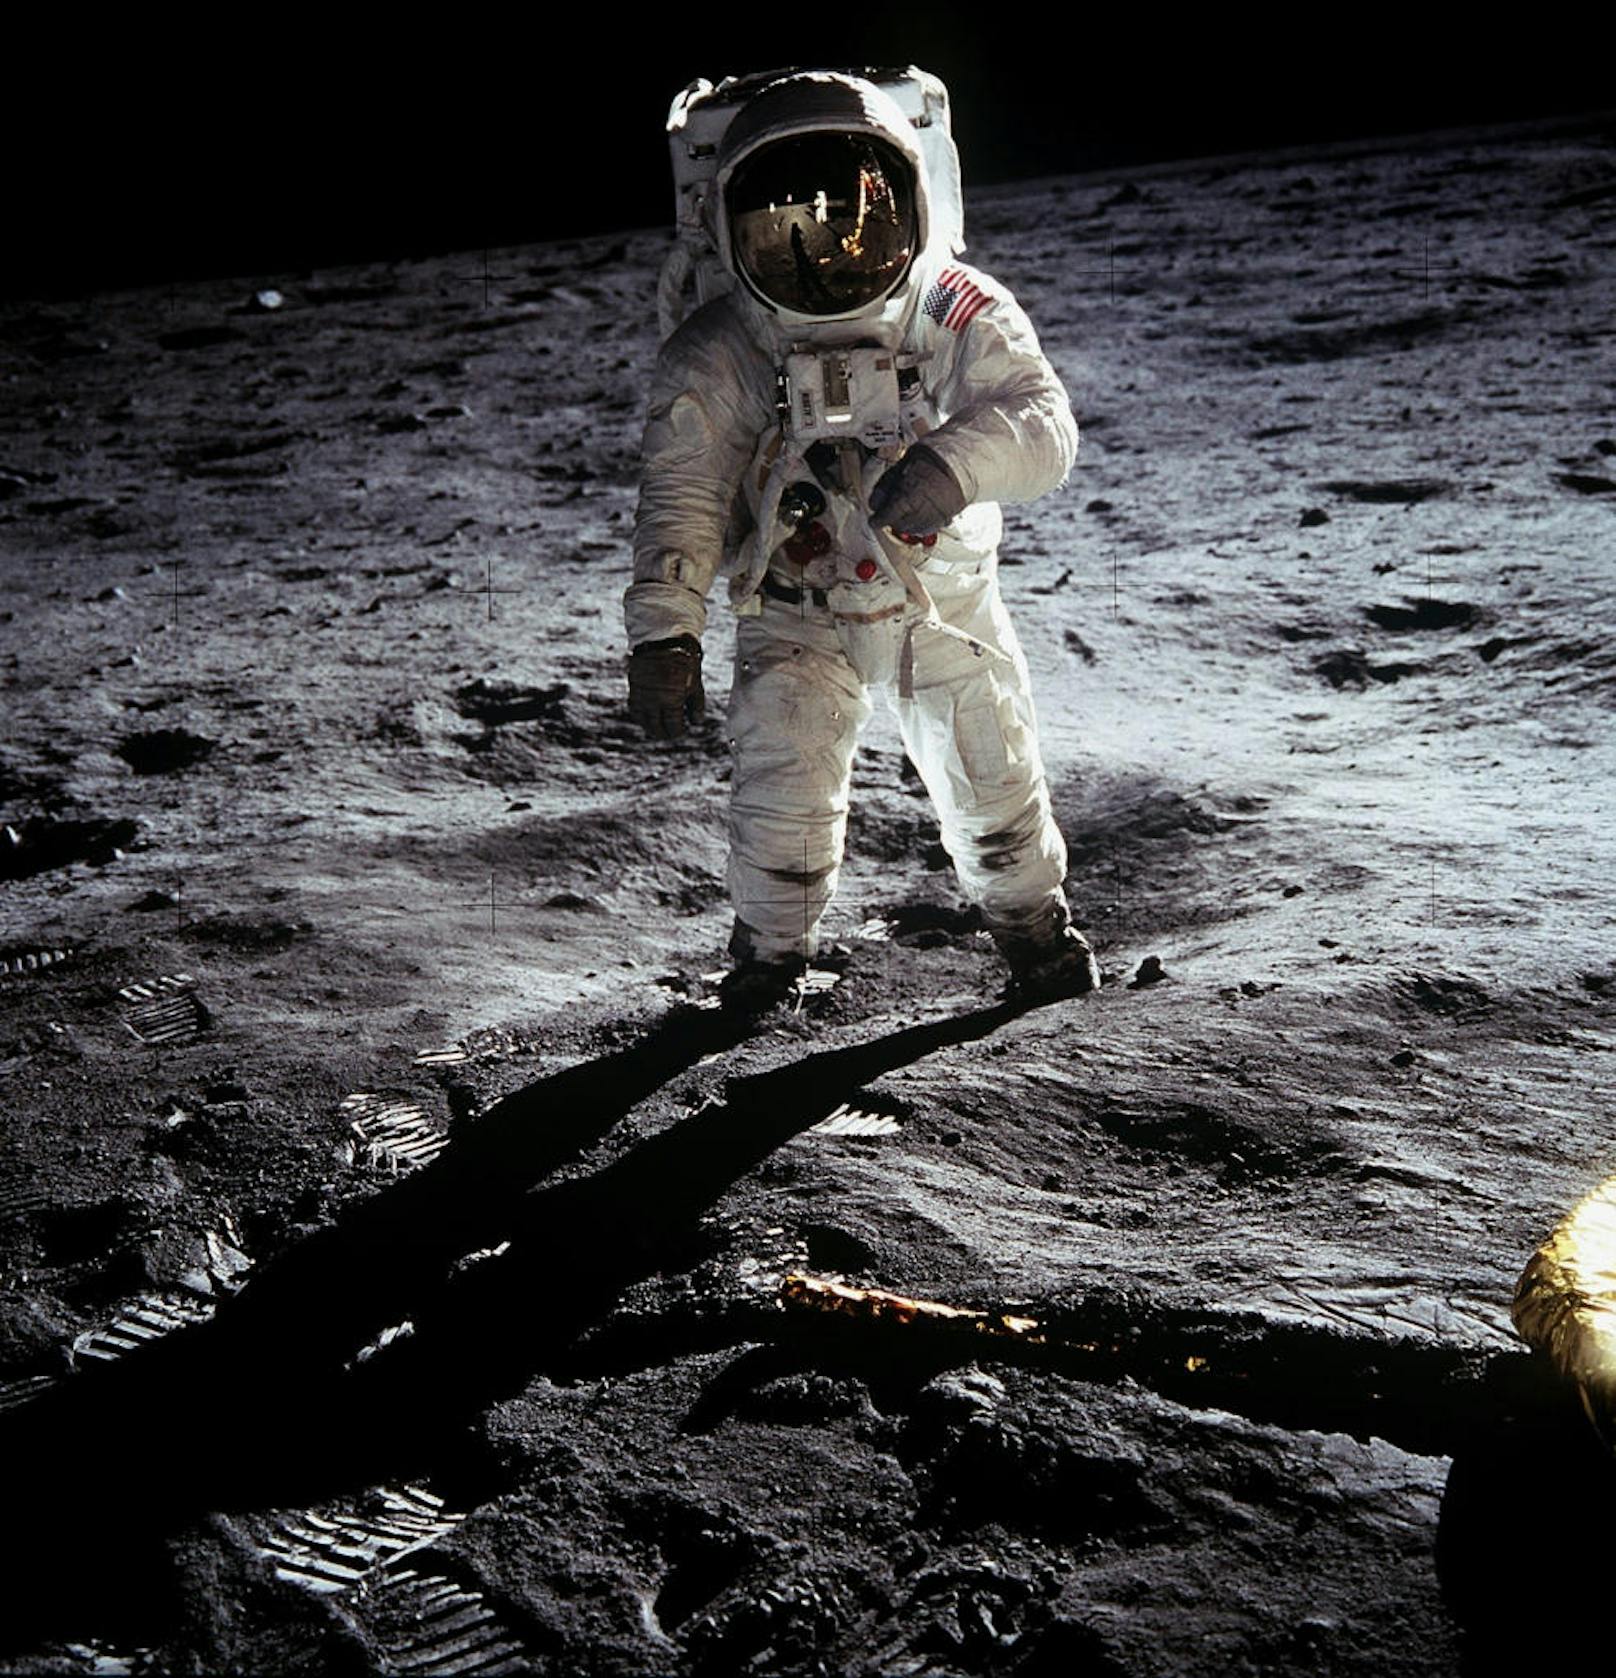 Buzz Aldrin auf der Mondoberfläche. In der Spiegelung seines Helmes sind sowohl die Mondfähre, als auch Neil Armstrong zu sehen. Ihr Kollege Michael Collins musste währenddessen das Kommandomodul im Orbit steuern. Er hat den Mond nie betreten.